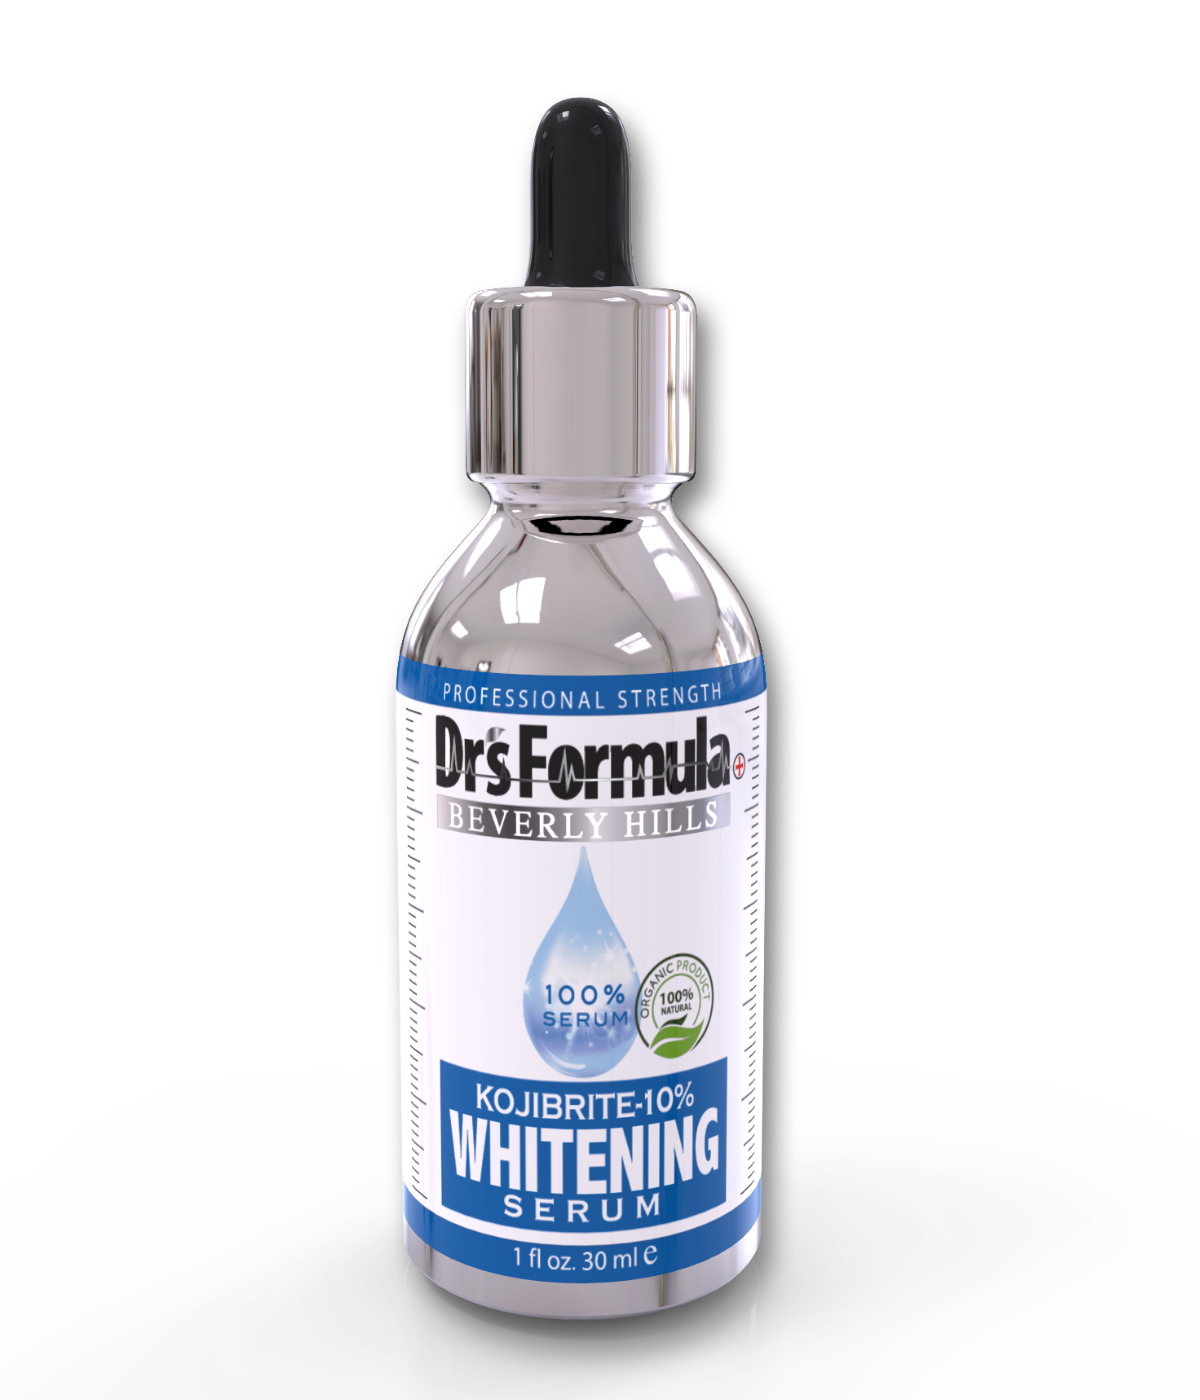 Kojibrite-10% Whitening Serum